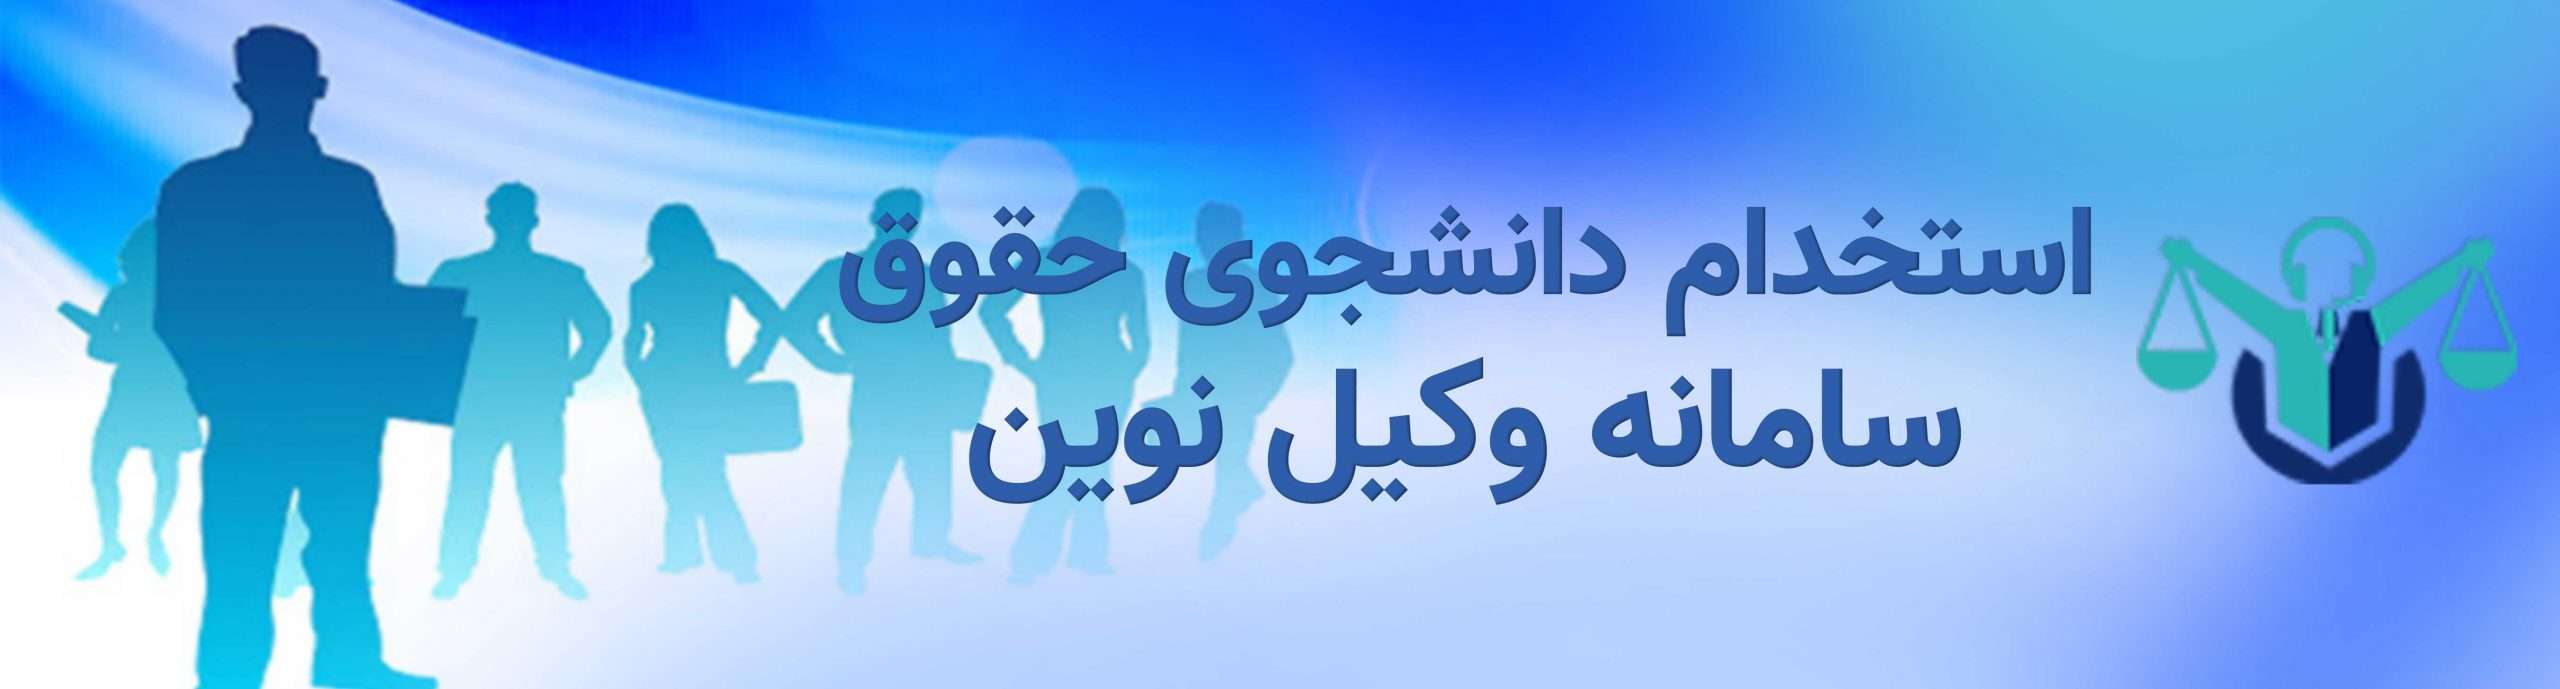 01استخدام دانشجوی حقوق scaled استخدام دانشجو حقوق یا فارغ التحصیل حقوق در بوشهر